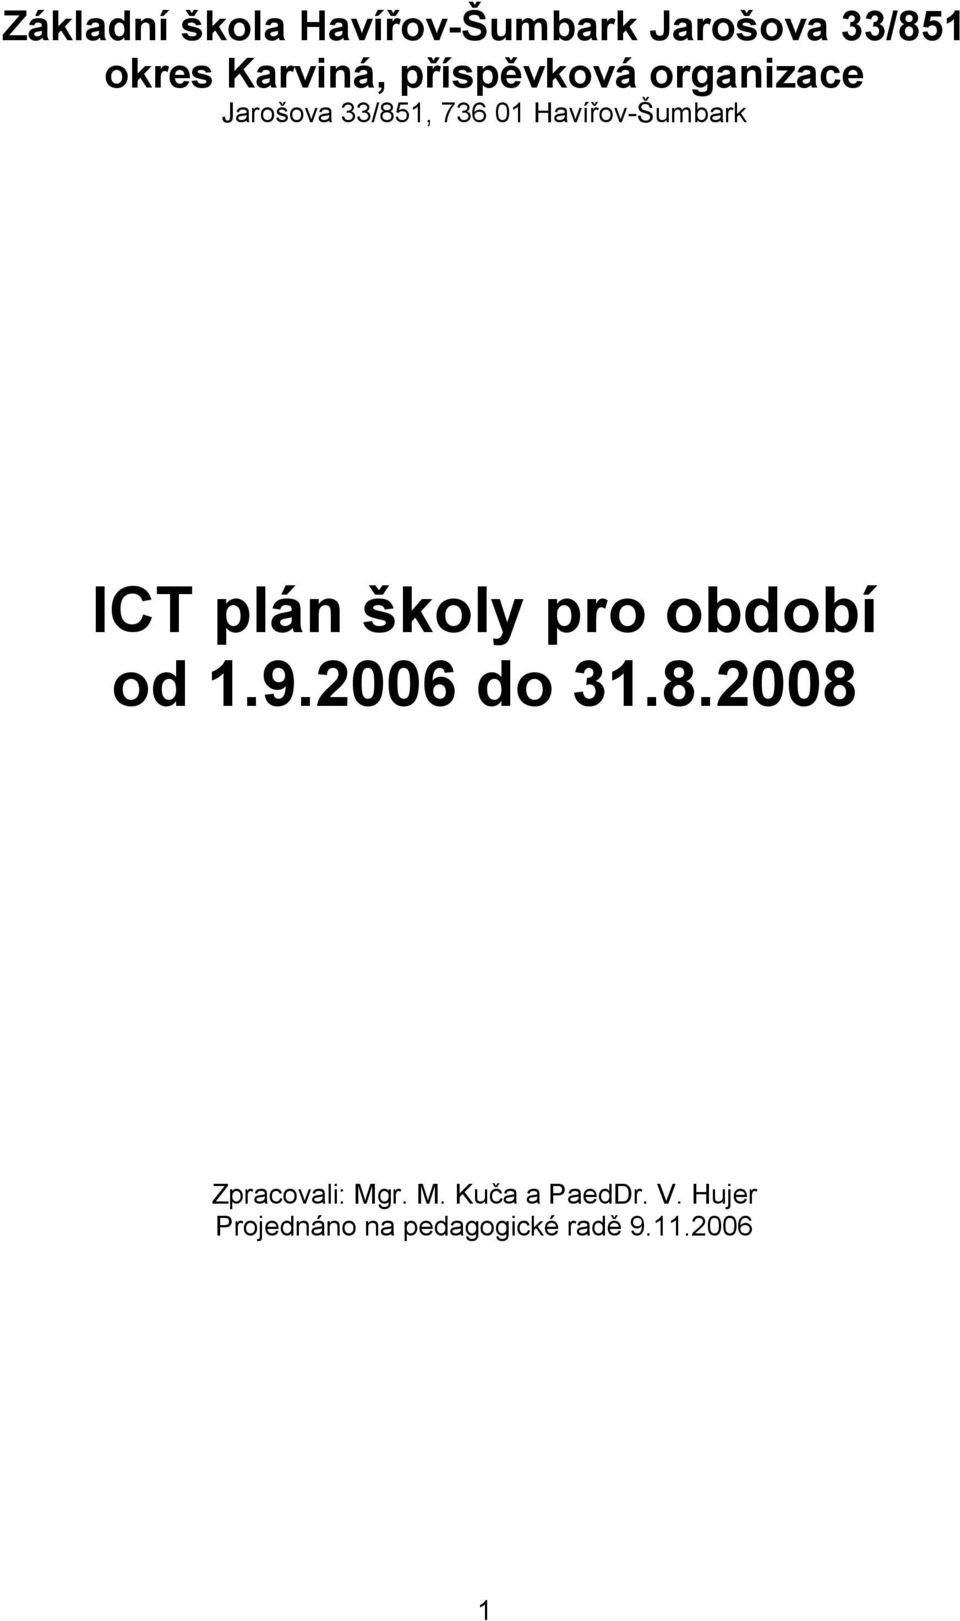 ICT plán školy pro období od 1.9.2006 do 31.8.